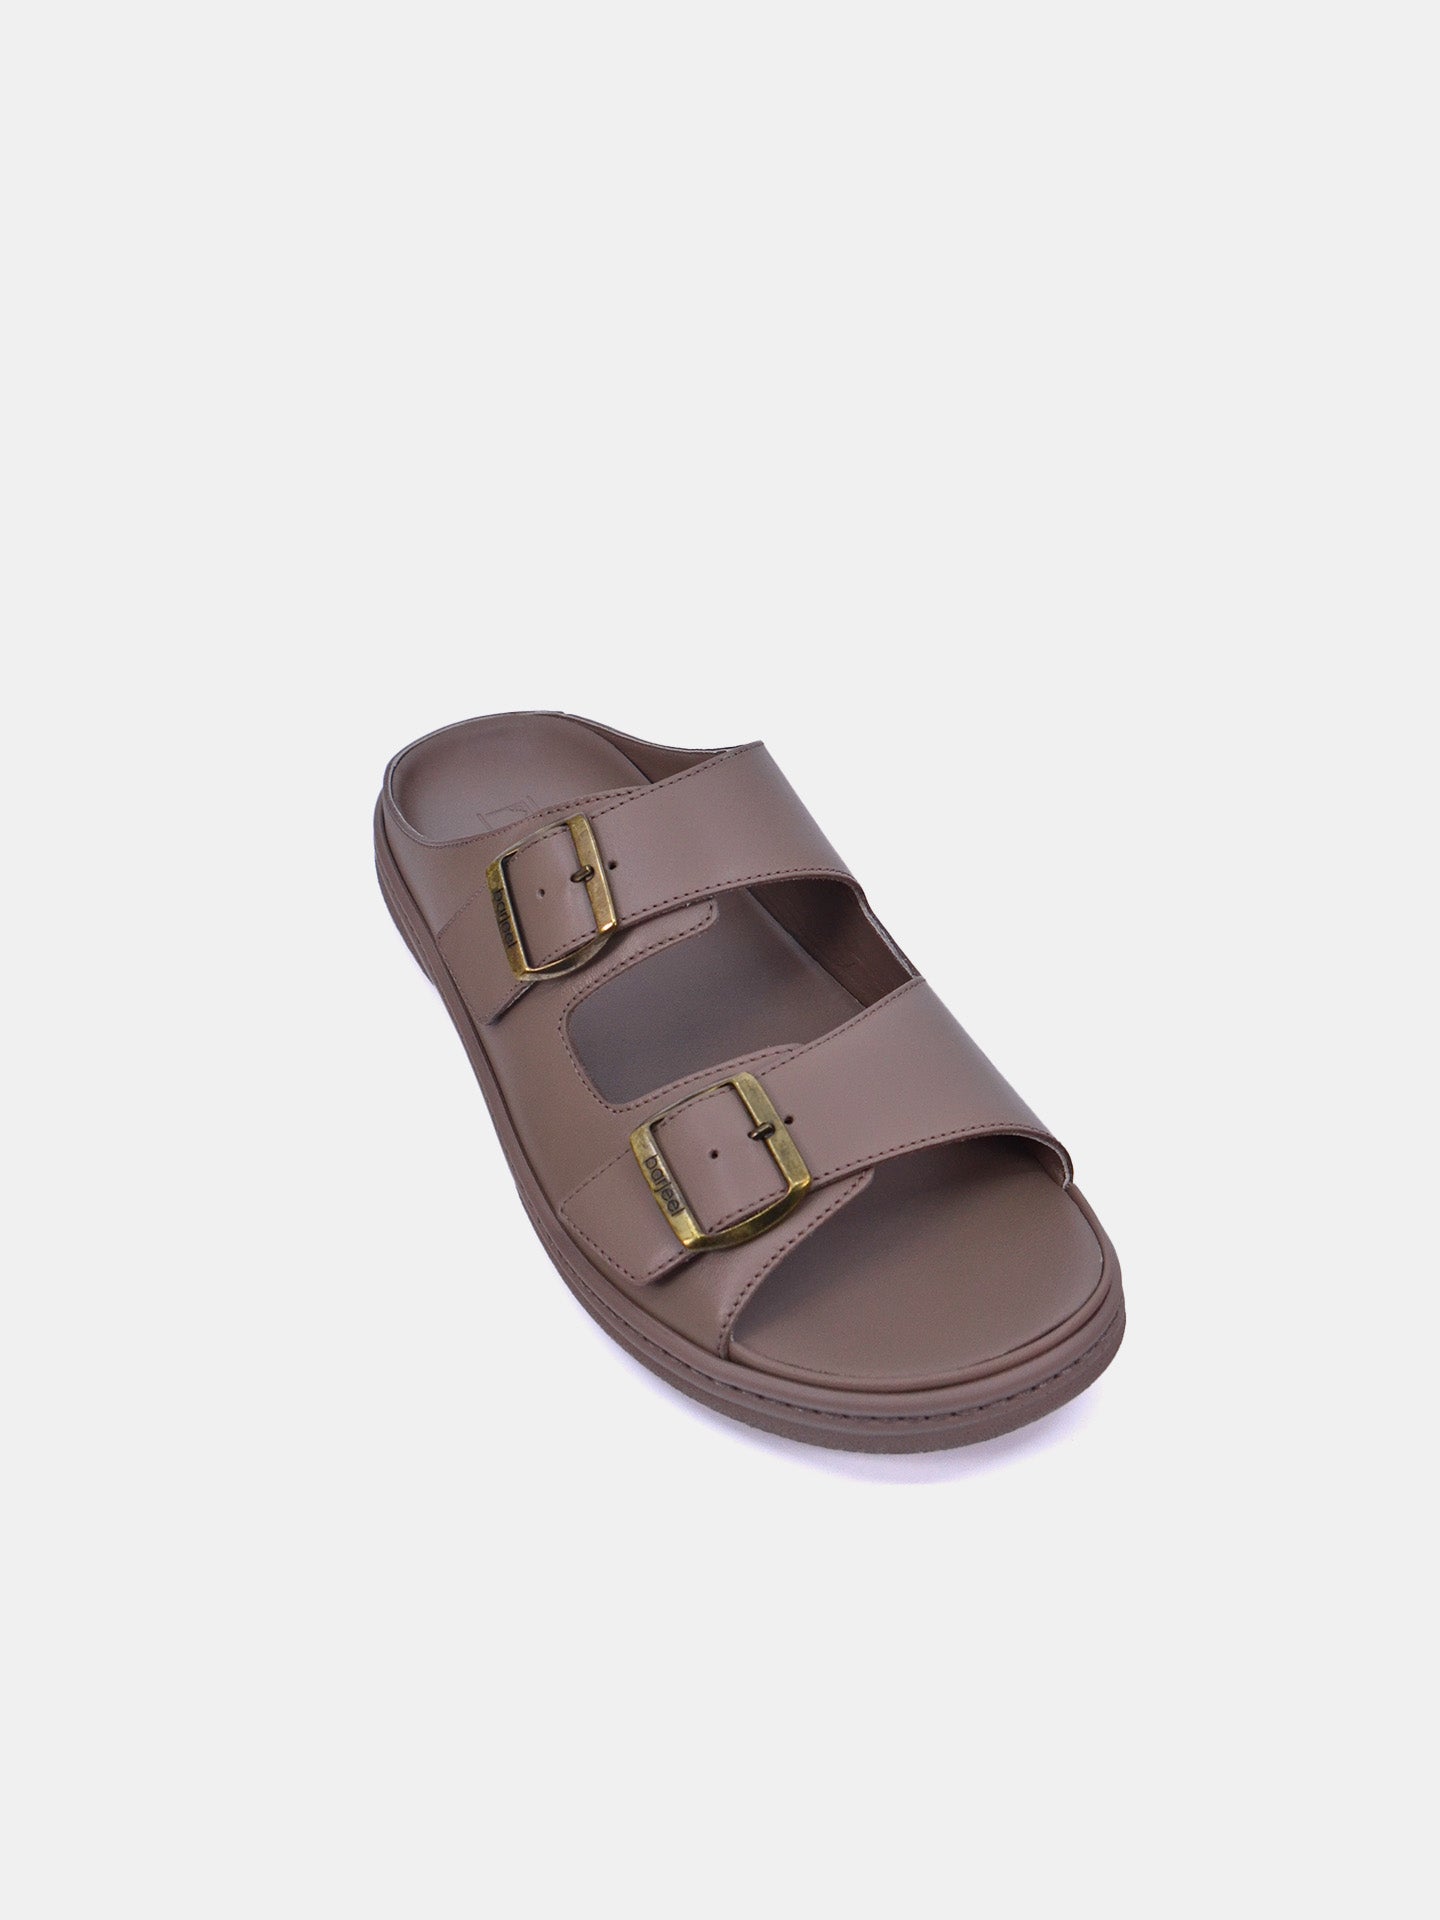 Barjeel Uno 23810 Men's Arabic Sandals #color_Beige